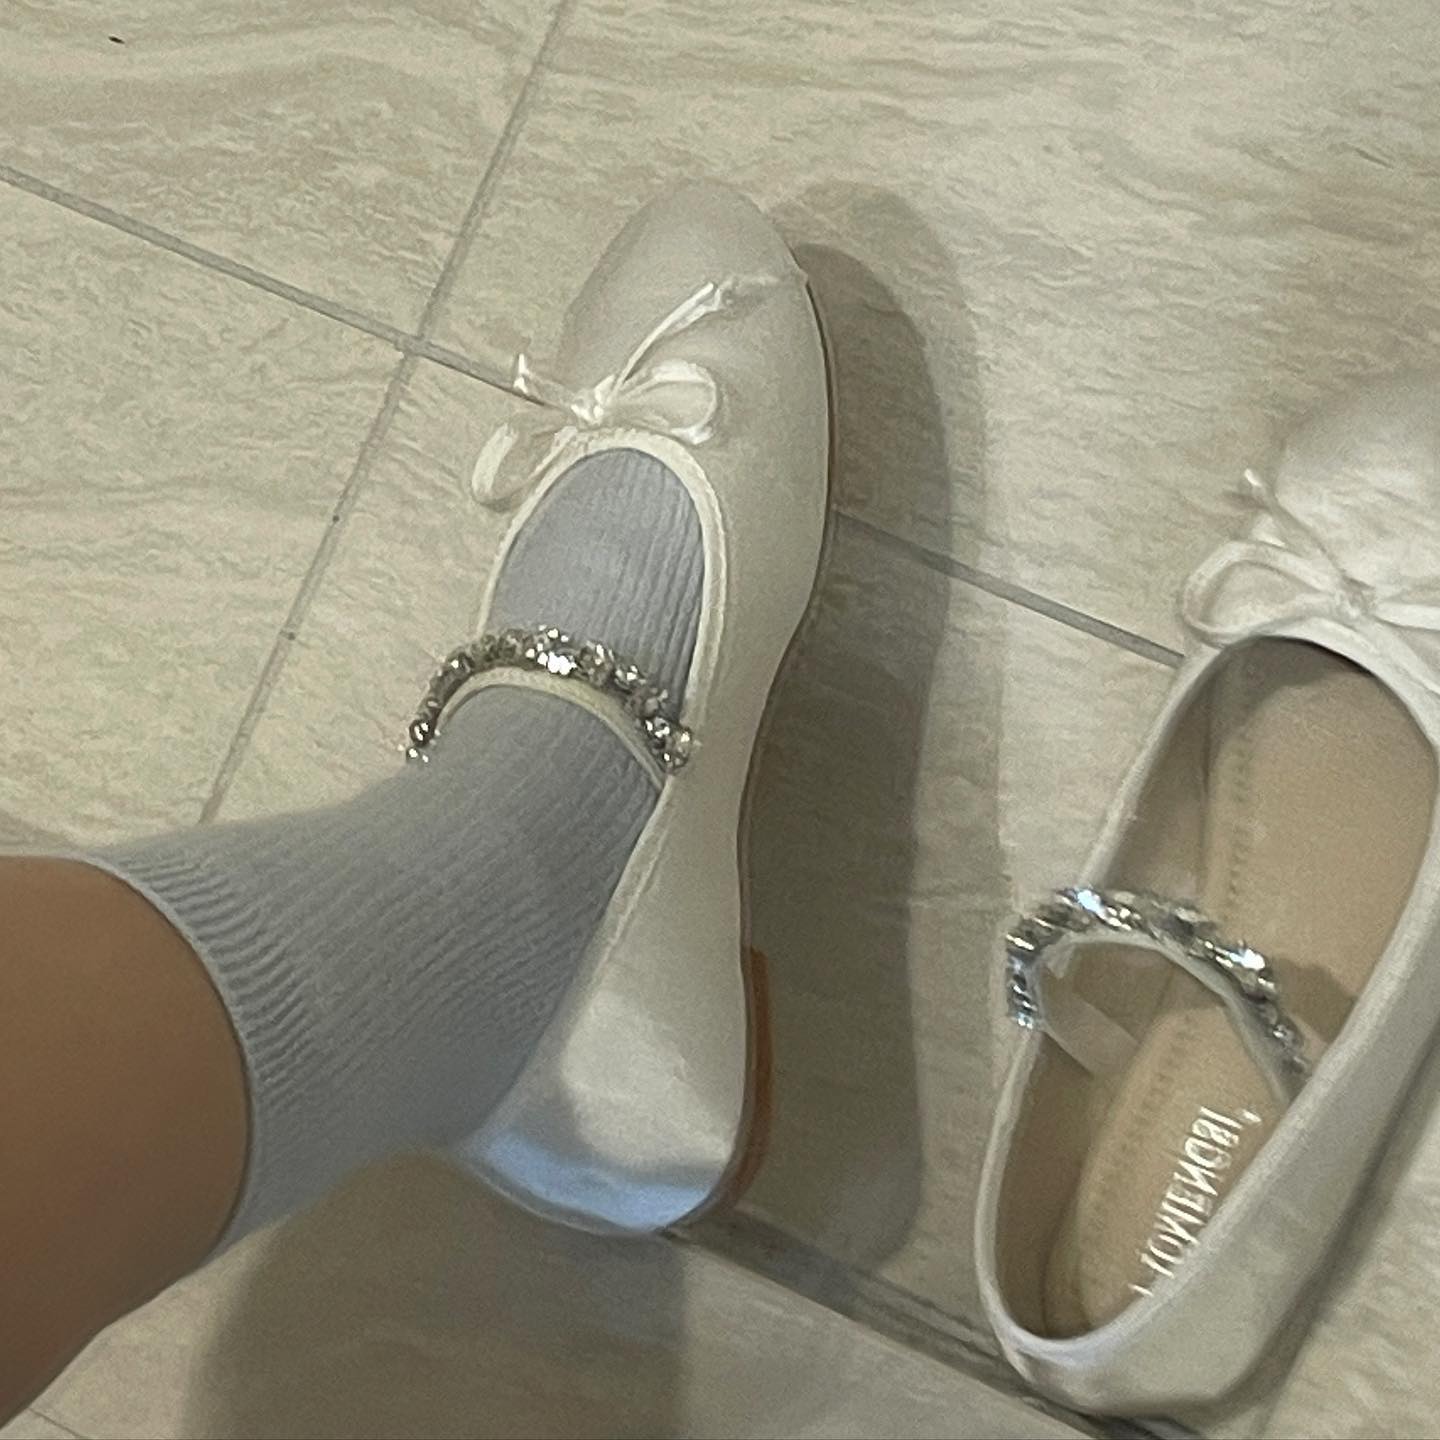 bijou strap ballet shoes lf1863